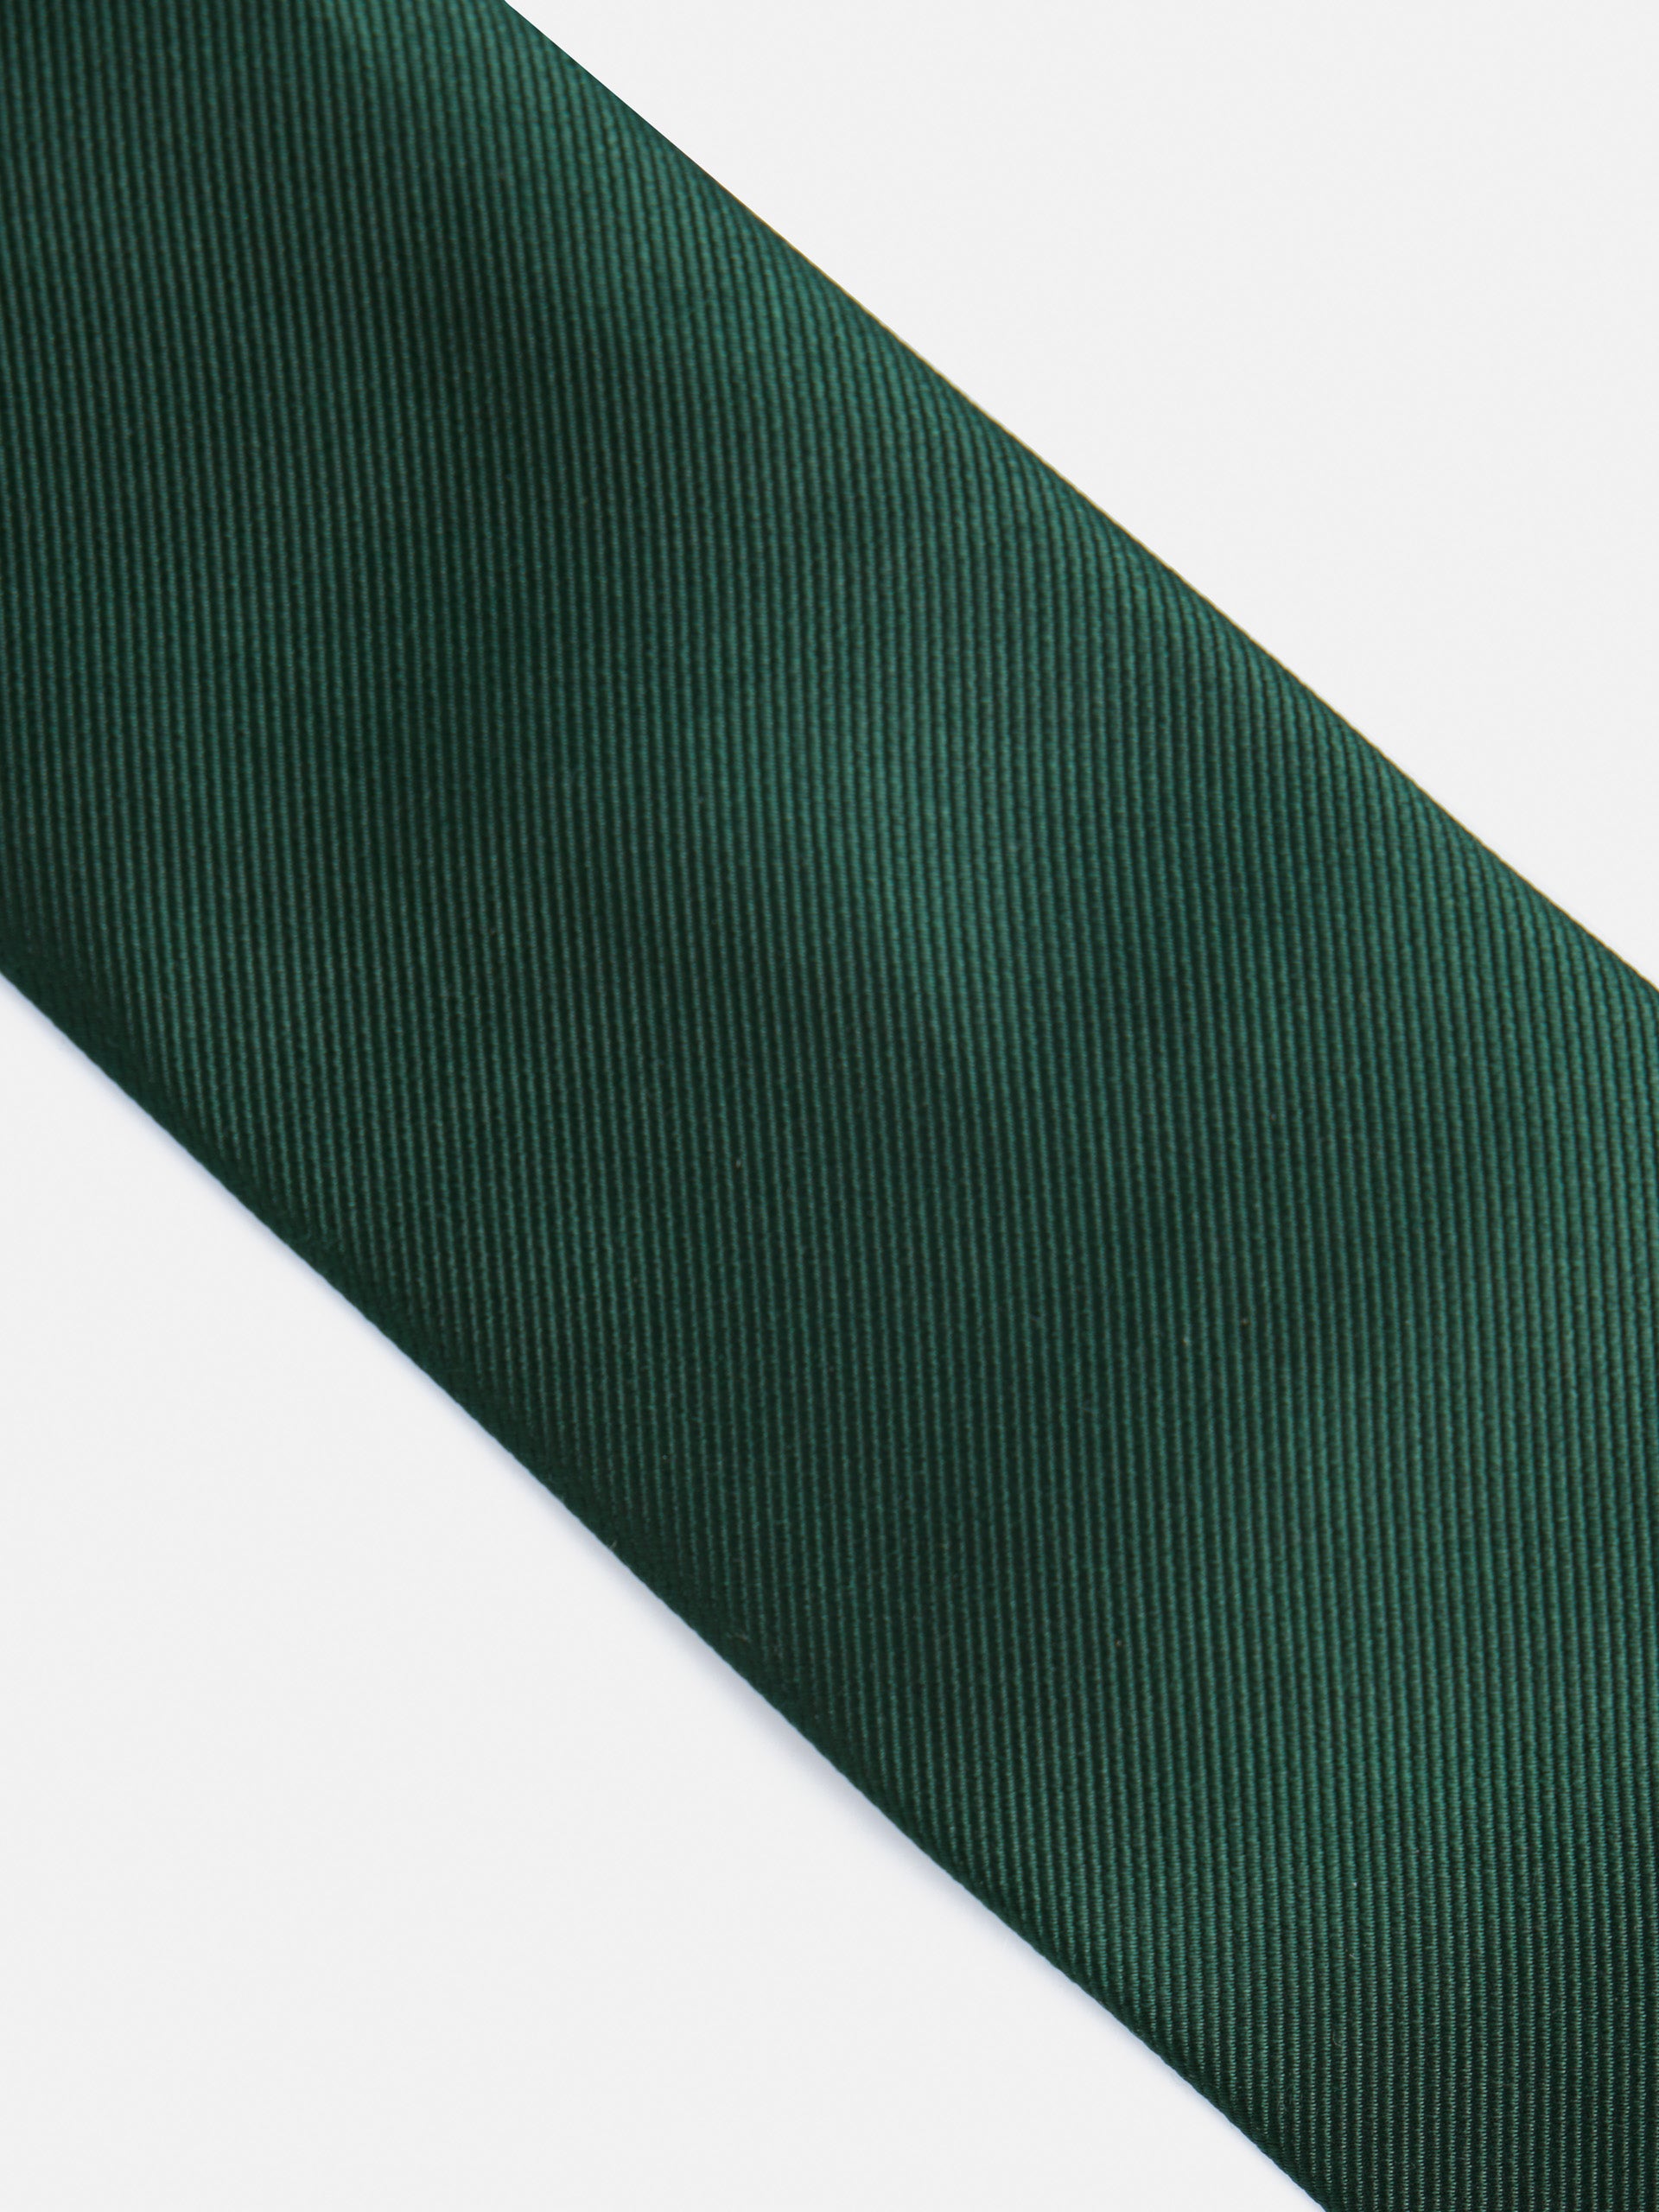 Cravate en silbon vert lisse